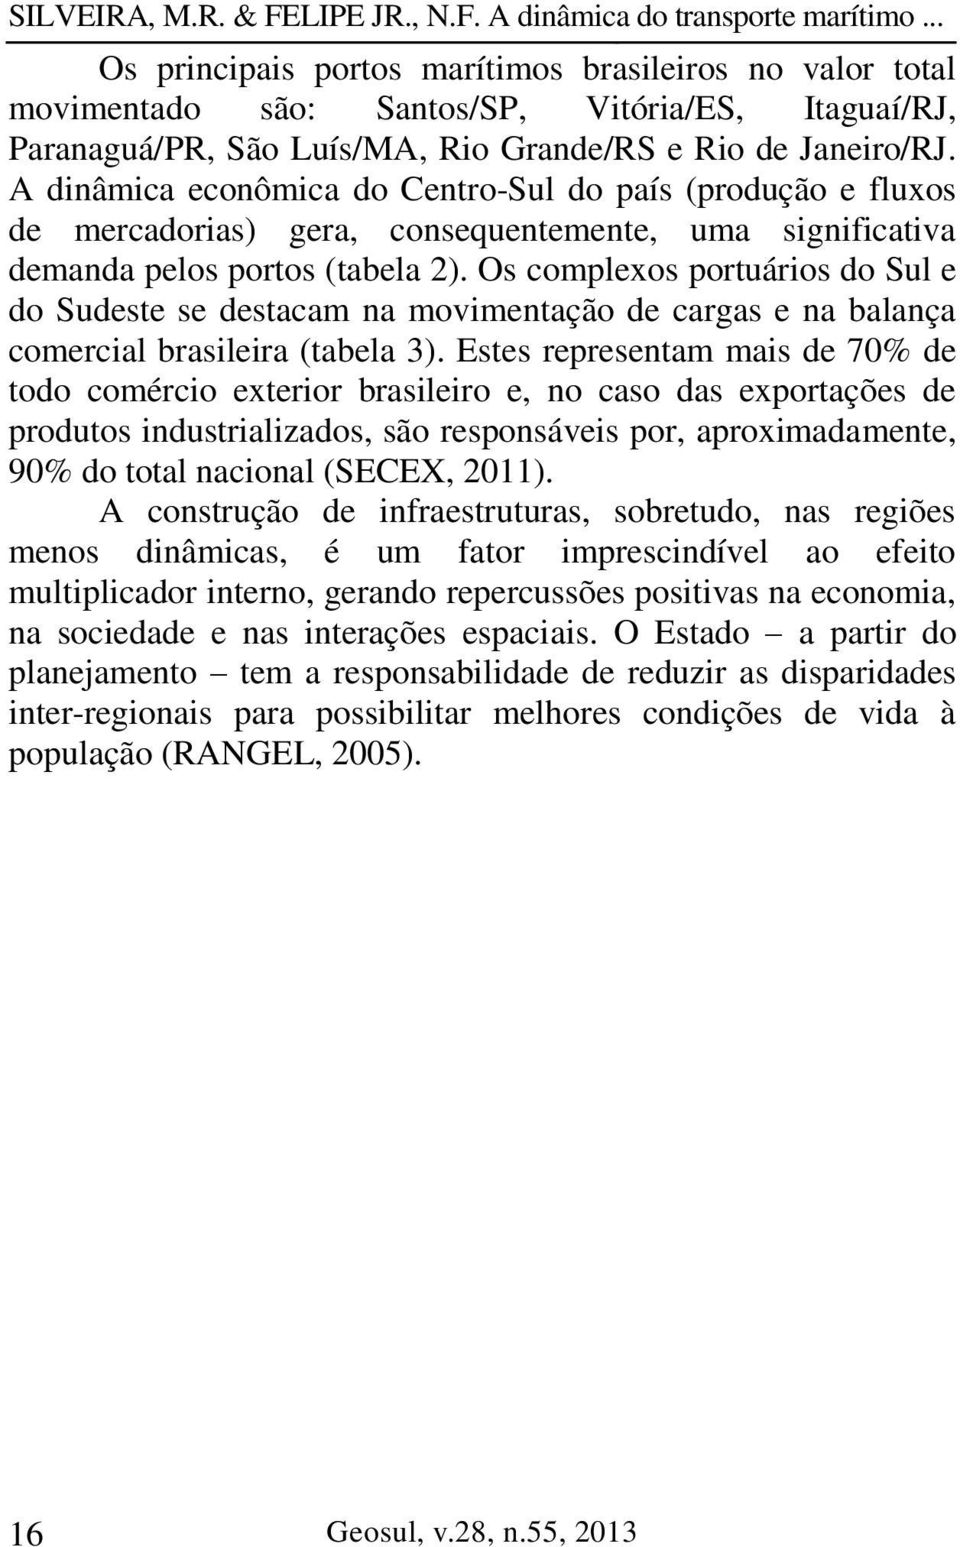 Os complexos portuários do Sul e do Sudeste se destacam na movimentação de cargas e na balança comercial brasileira (tabela 3).